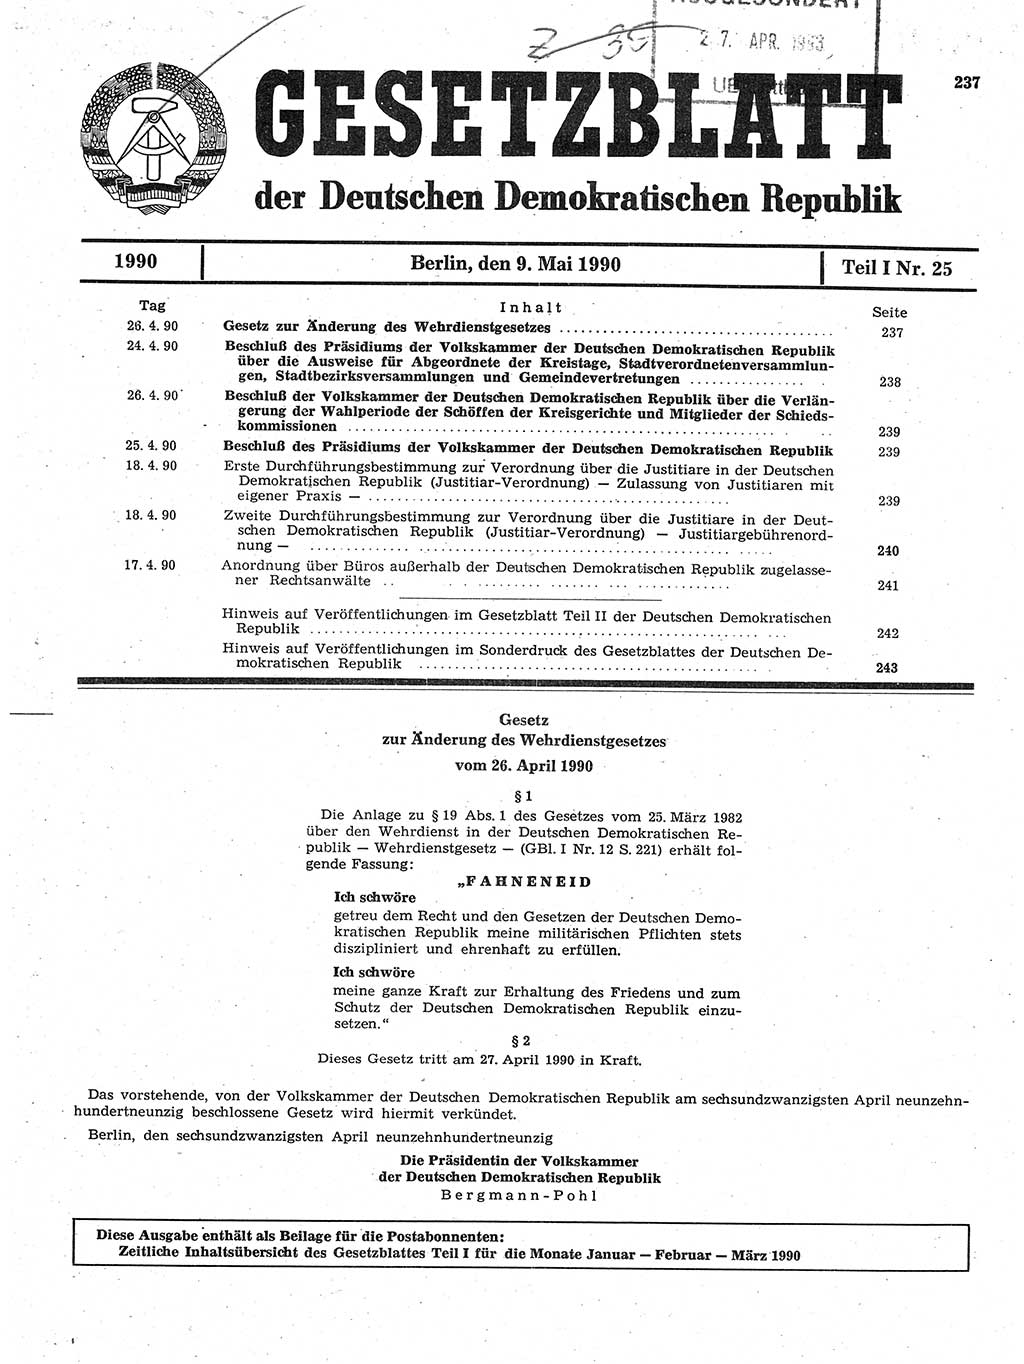 Gesetzblatt (GBl.) der Deutschen Demokratischen Republik (DDR) Teil Ⅰ 1990, Seite 237 (GBl. DDR Ⅰ 1990, S. 237)